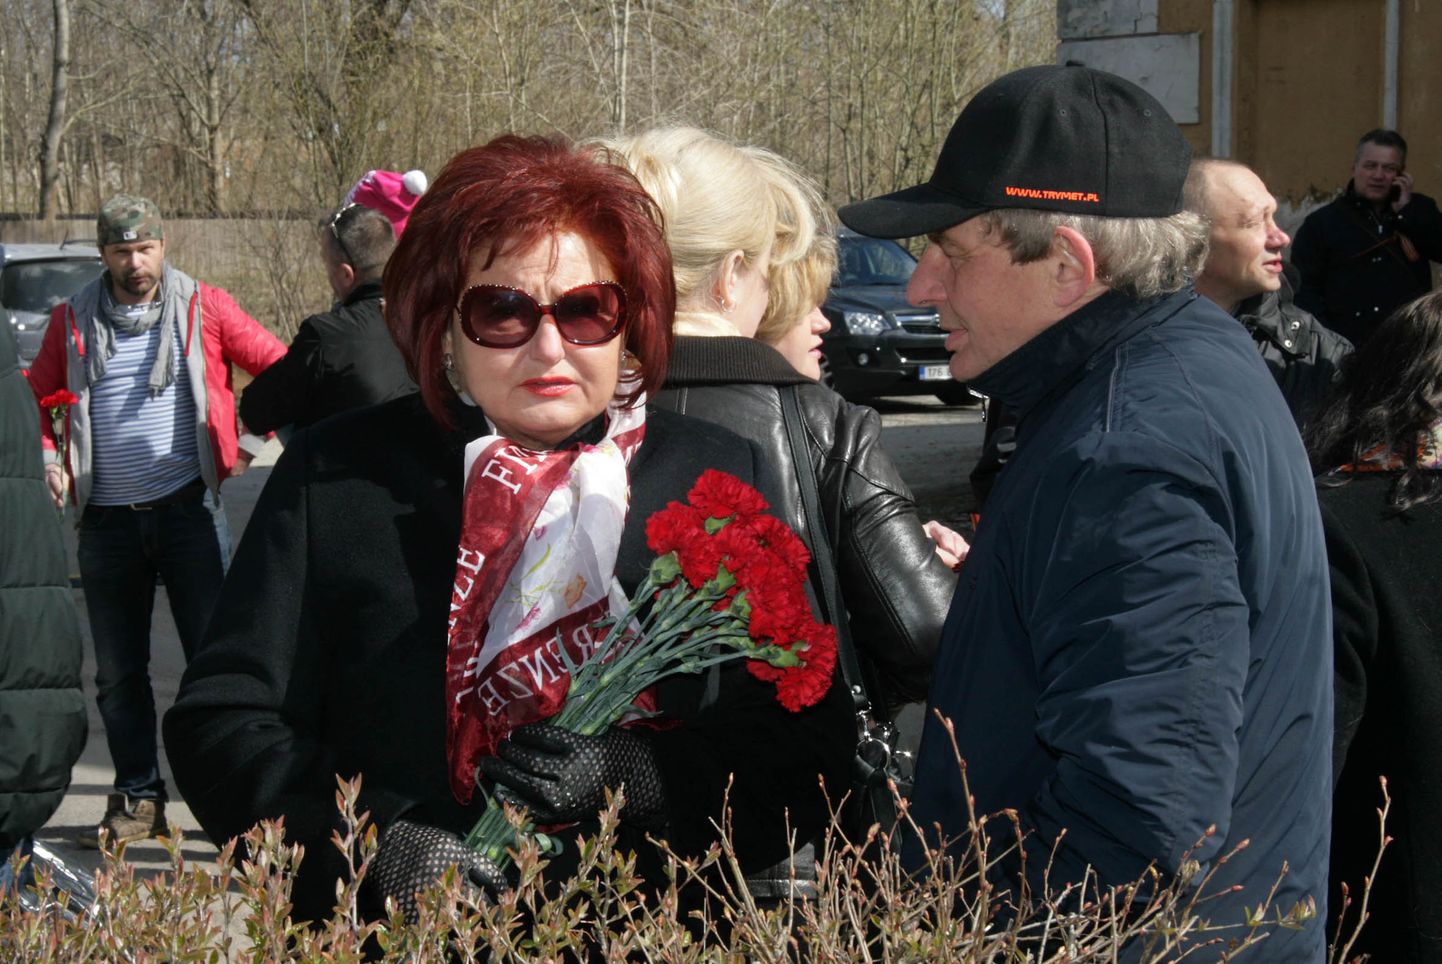 Kohtla-Järve linnapea Ljudmila Jantšenko ning tema eelkäija Jevgeni Solovjov sõbralikult vestlemas 2017. aasta 9. mail Kohtla-Järvel sõjas langenute monumendi juures. 22 päeva hiljem, 31. mail allkirjastas Jantšenko Solovjovile saadetud pretensiooni, kus nõuti linnale tekitatud rohkem kui 200 000 euro suuruse kahju hüvitamist.